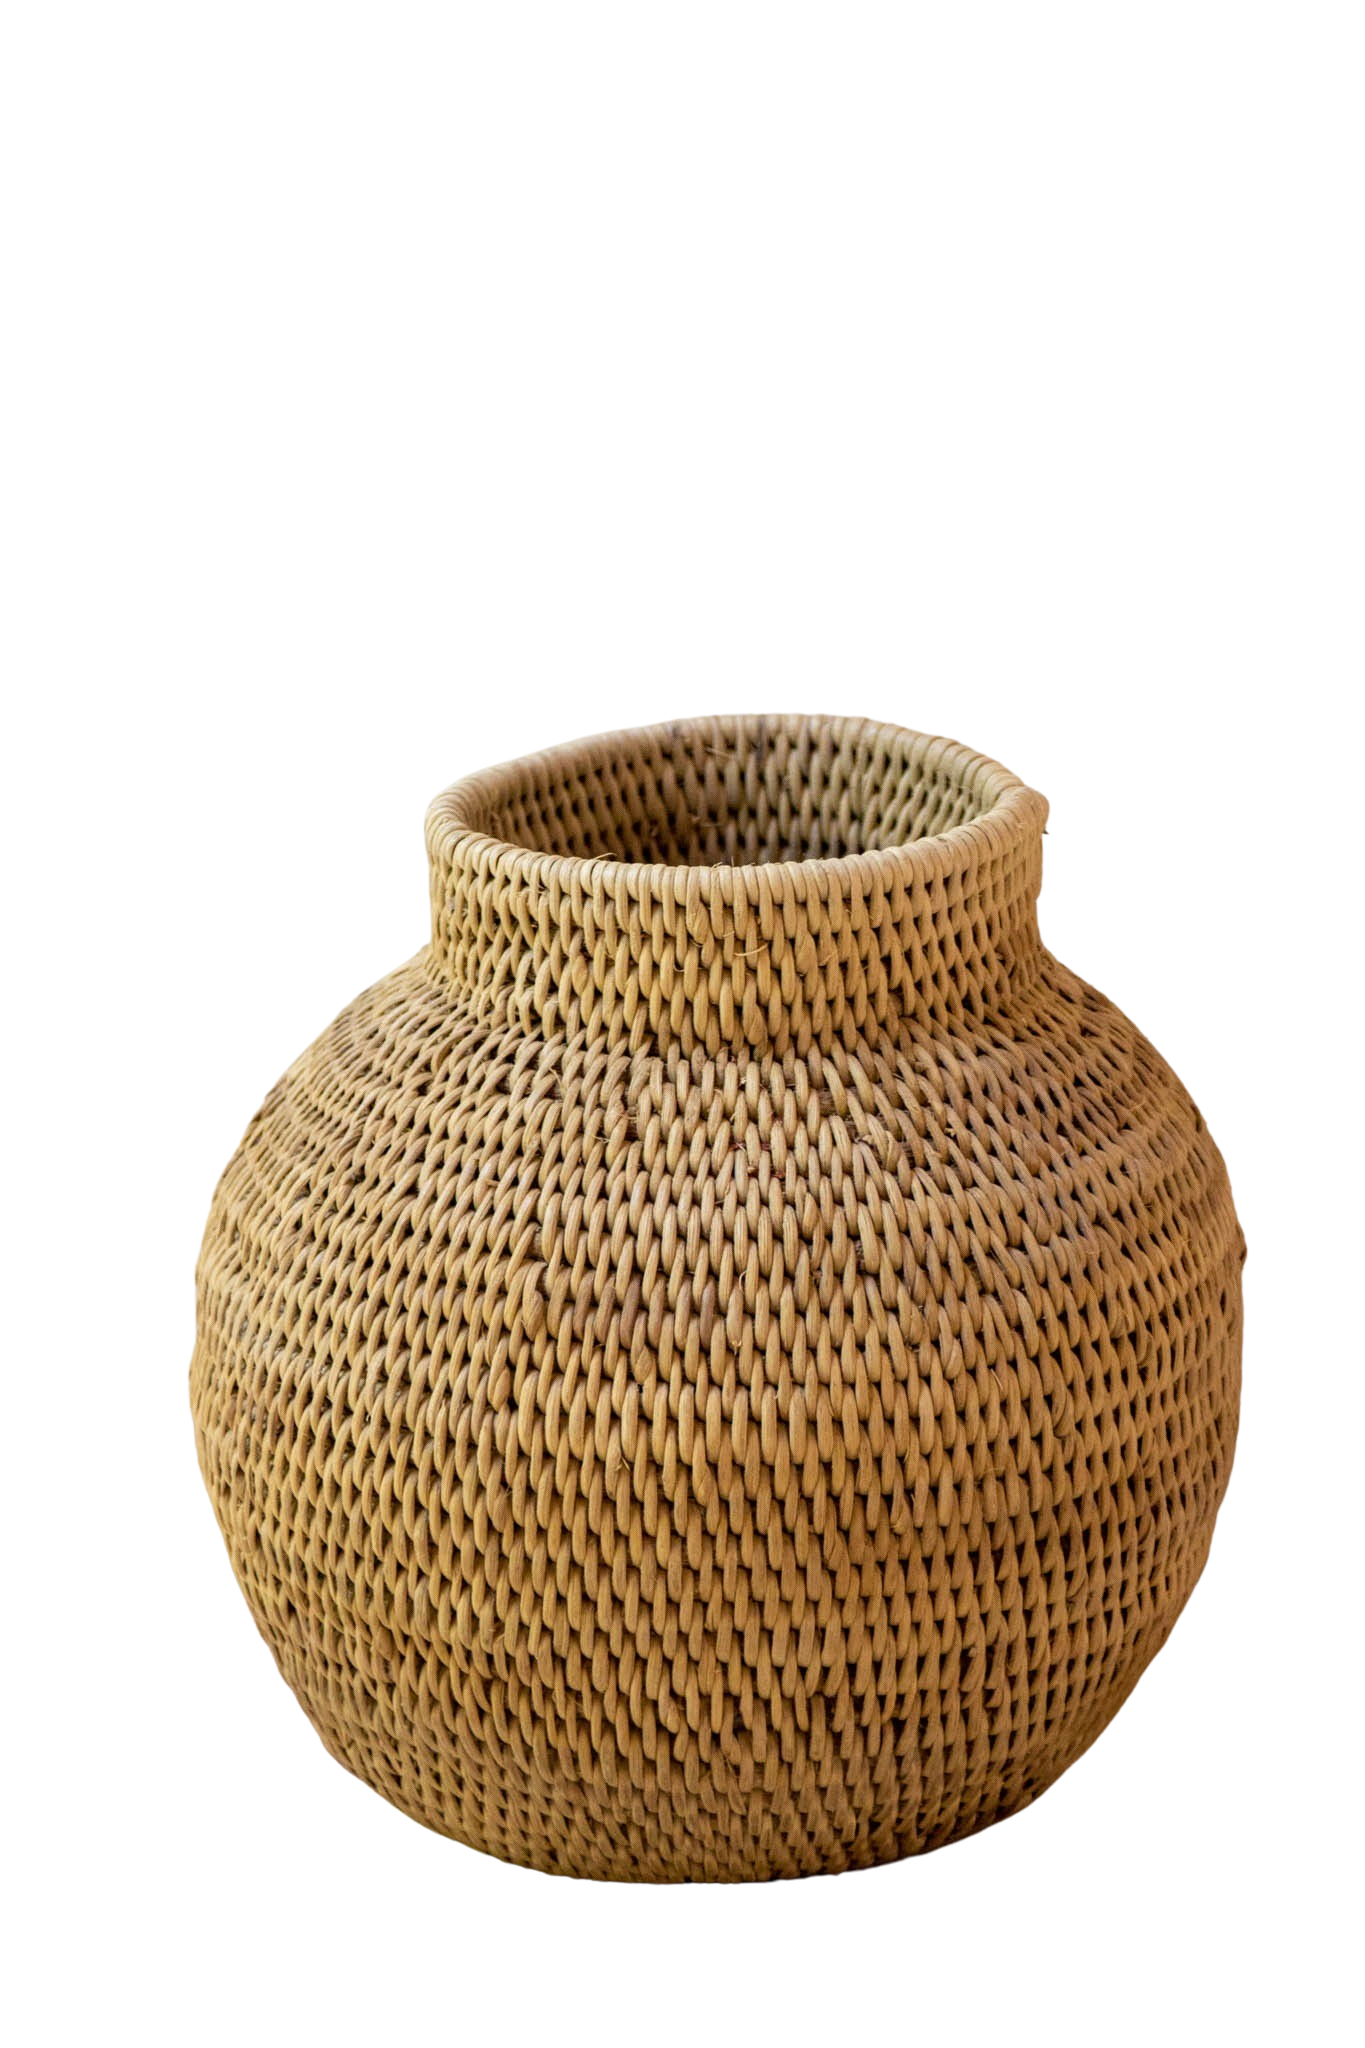 Buhera S African basket